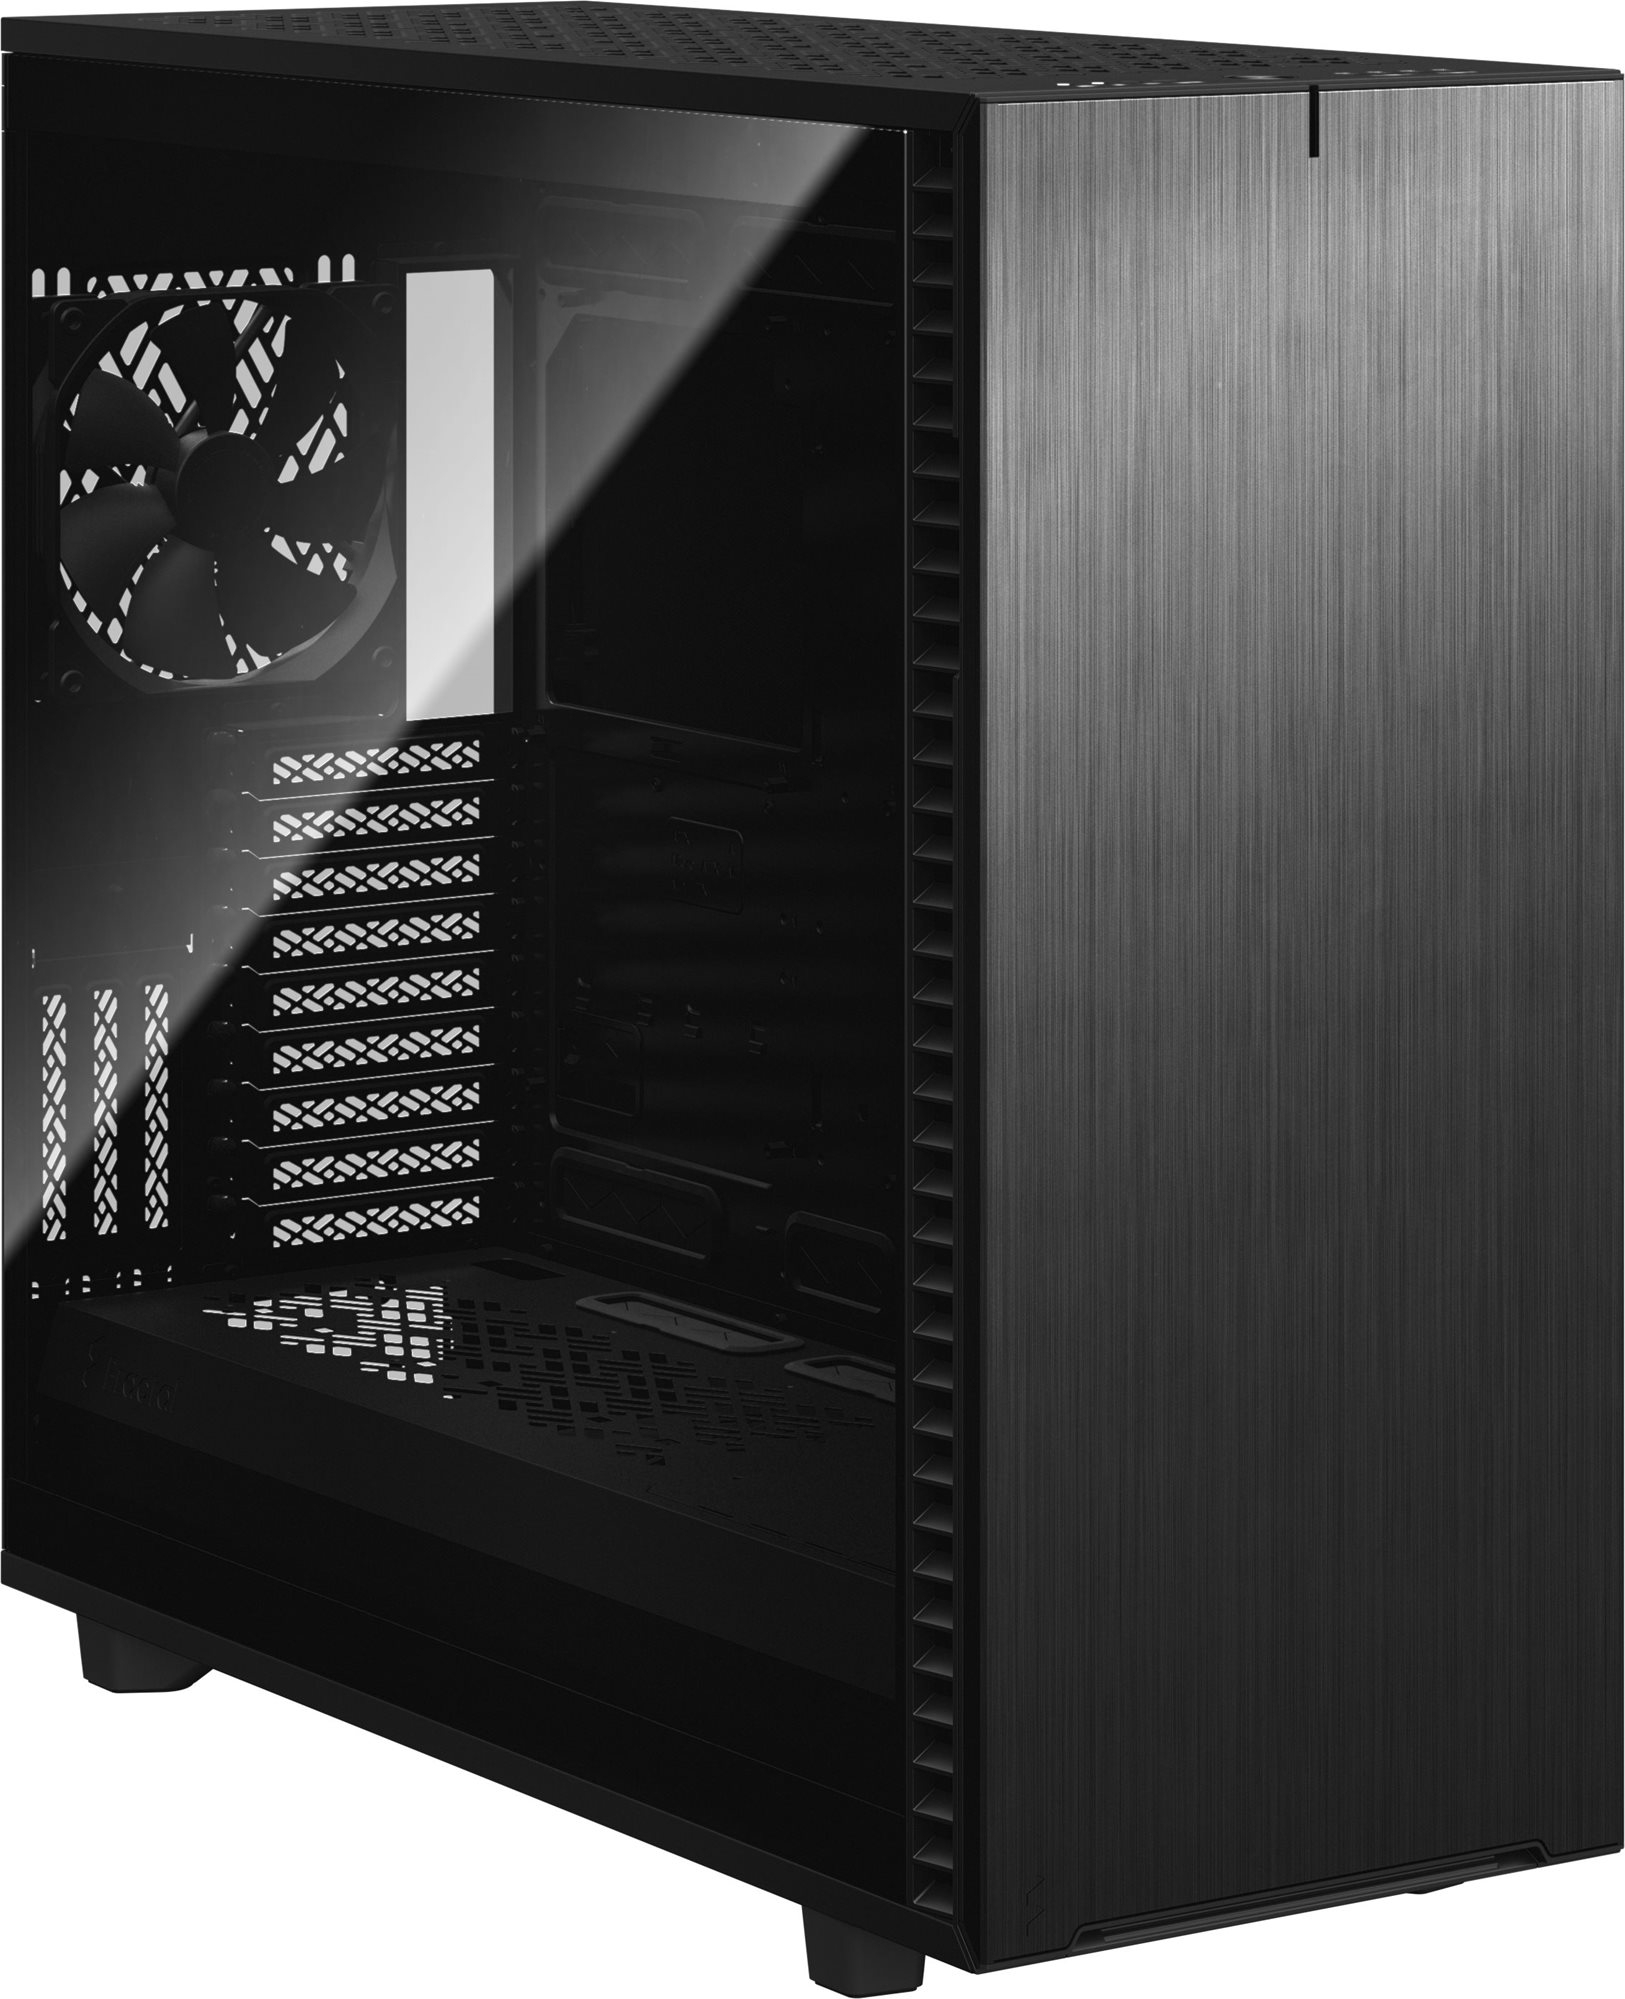 Számítógépház Fractal Design Define 7 XL Black - Dark TG